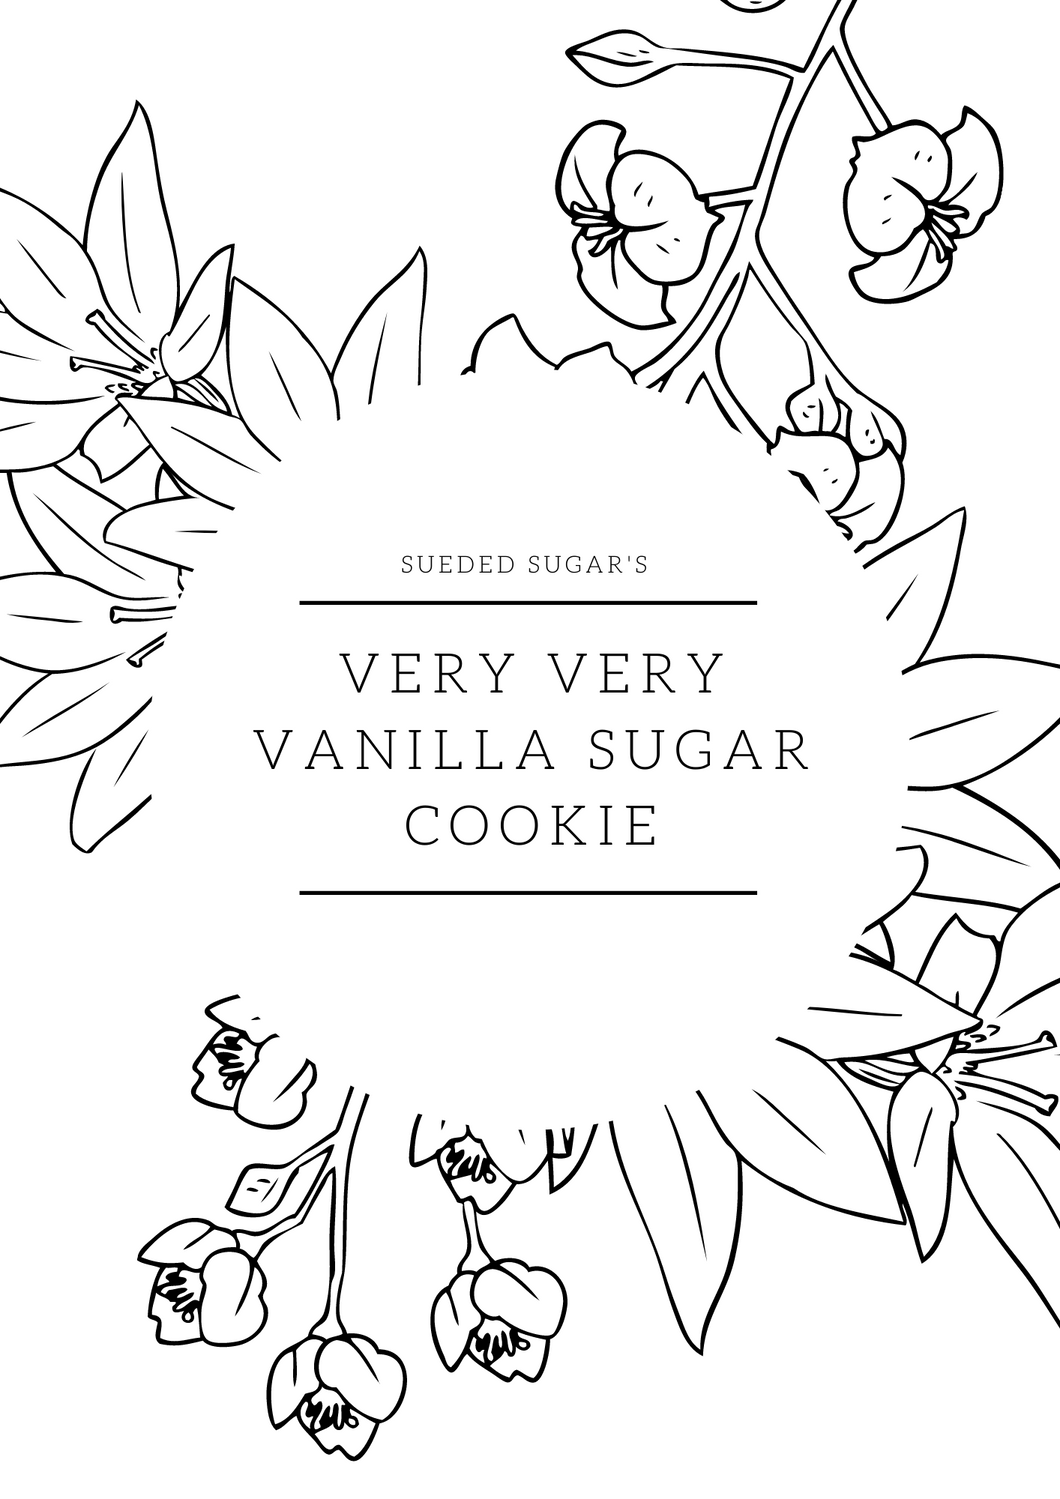 Very Very Vanilla sugar cookie recipe